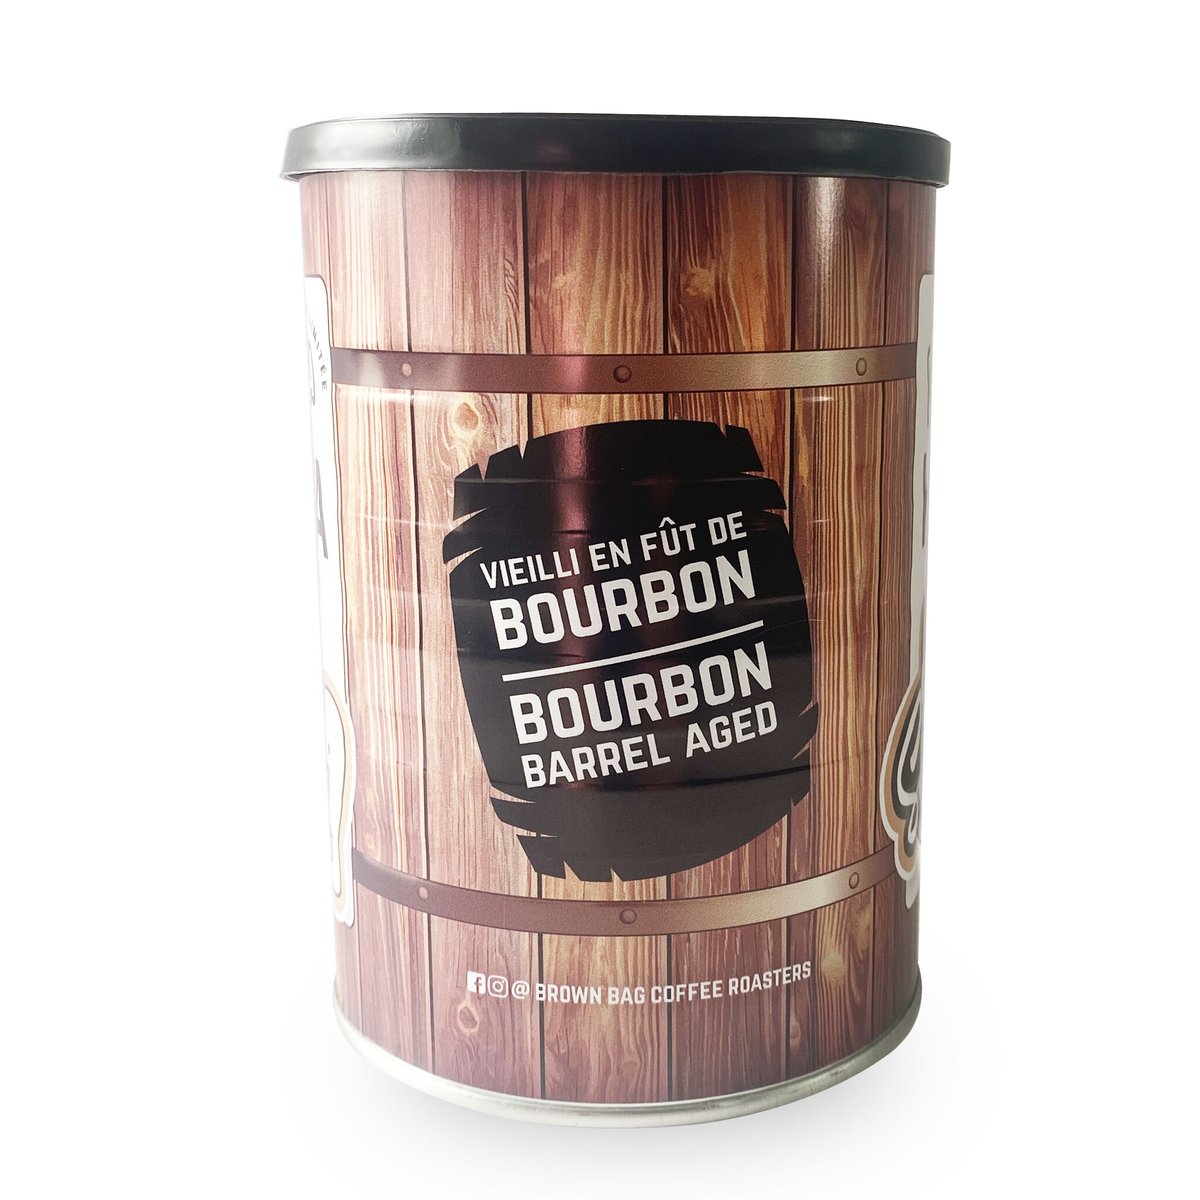 Yaaas! We have just released our latest bourbon barrel aged coffee! Go to our website to check it out! 

Ben ouain ! Nous venons de lancer notre dernier café vieilli en fût de bourbon ! Allez sur notre site web pour le découvrir ! 

#BarrelAged #SpecialtyCoffee #BBCR  #NewRelease